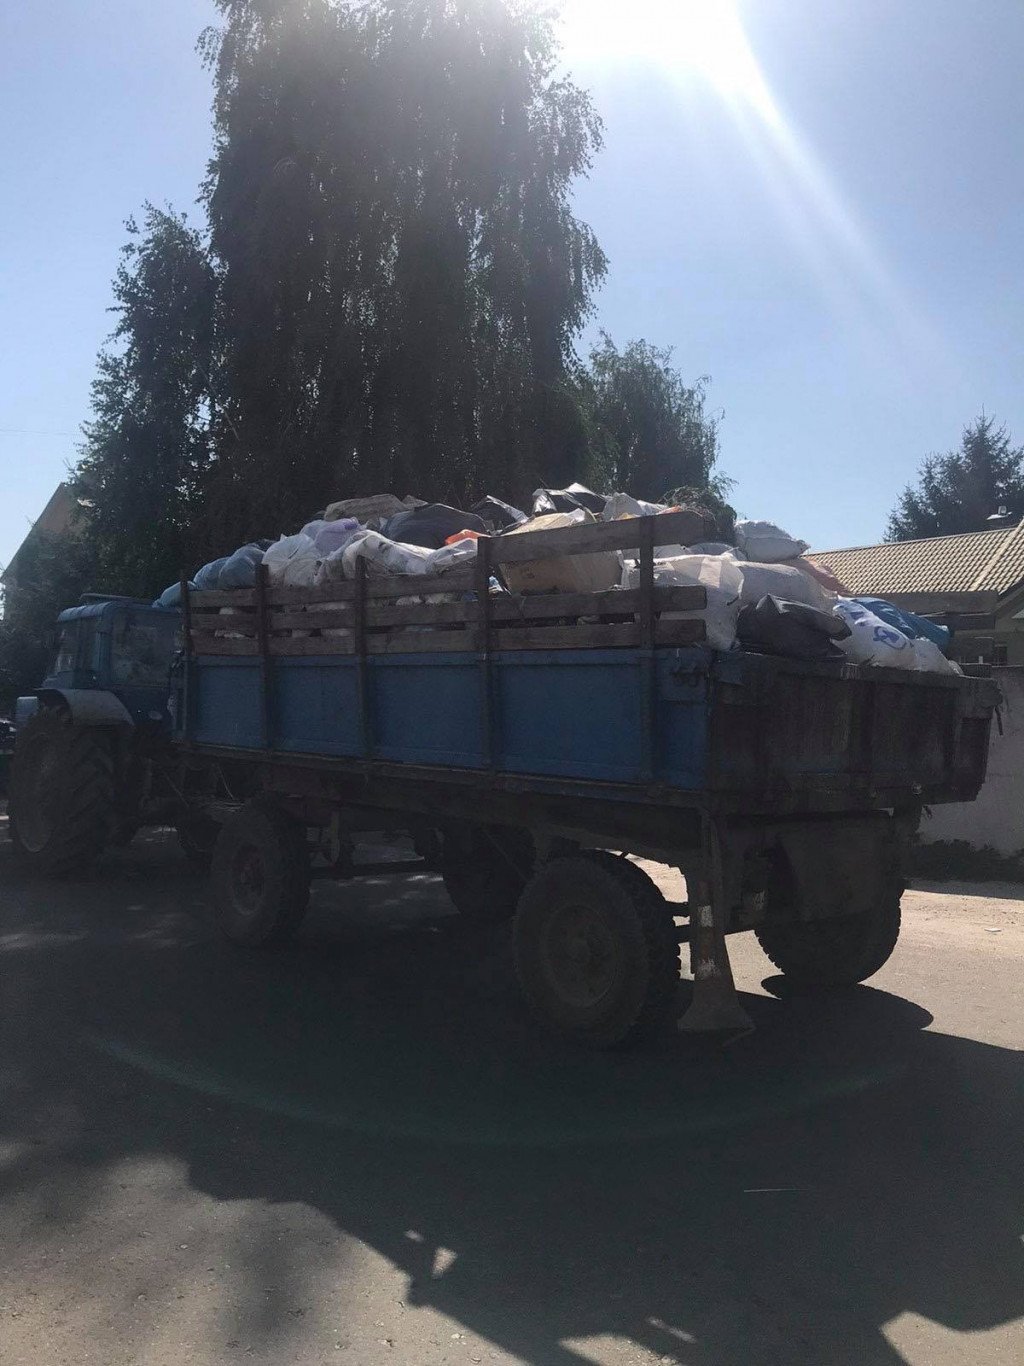 Сміття і політика: екоактивісти заблокували полігон на Бориспільщині через київські відходи